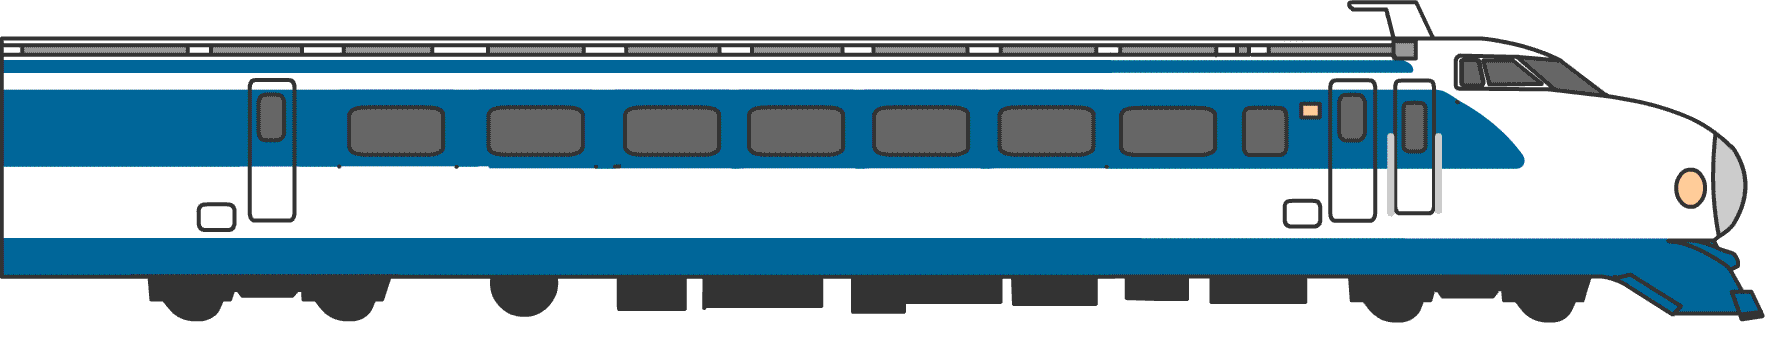 新幹線n700系電車 N700 Series Shinkansen Japaneseclass Jp